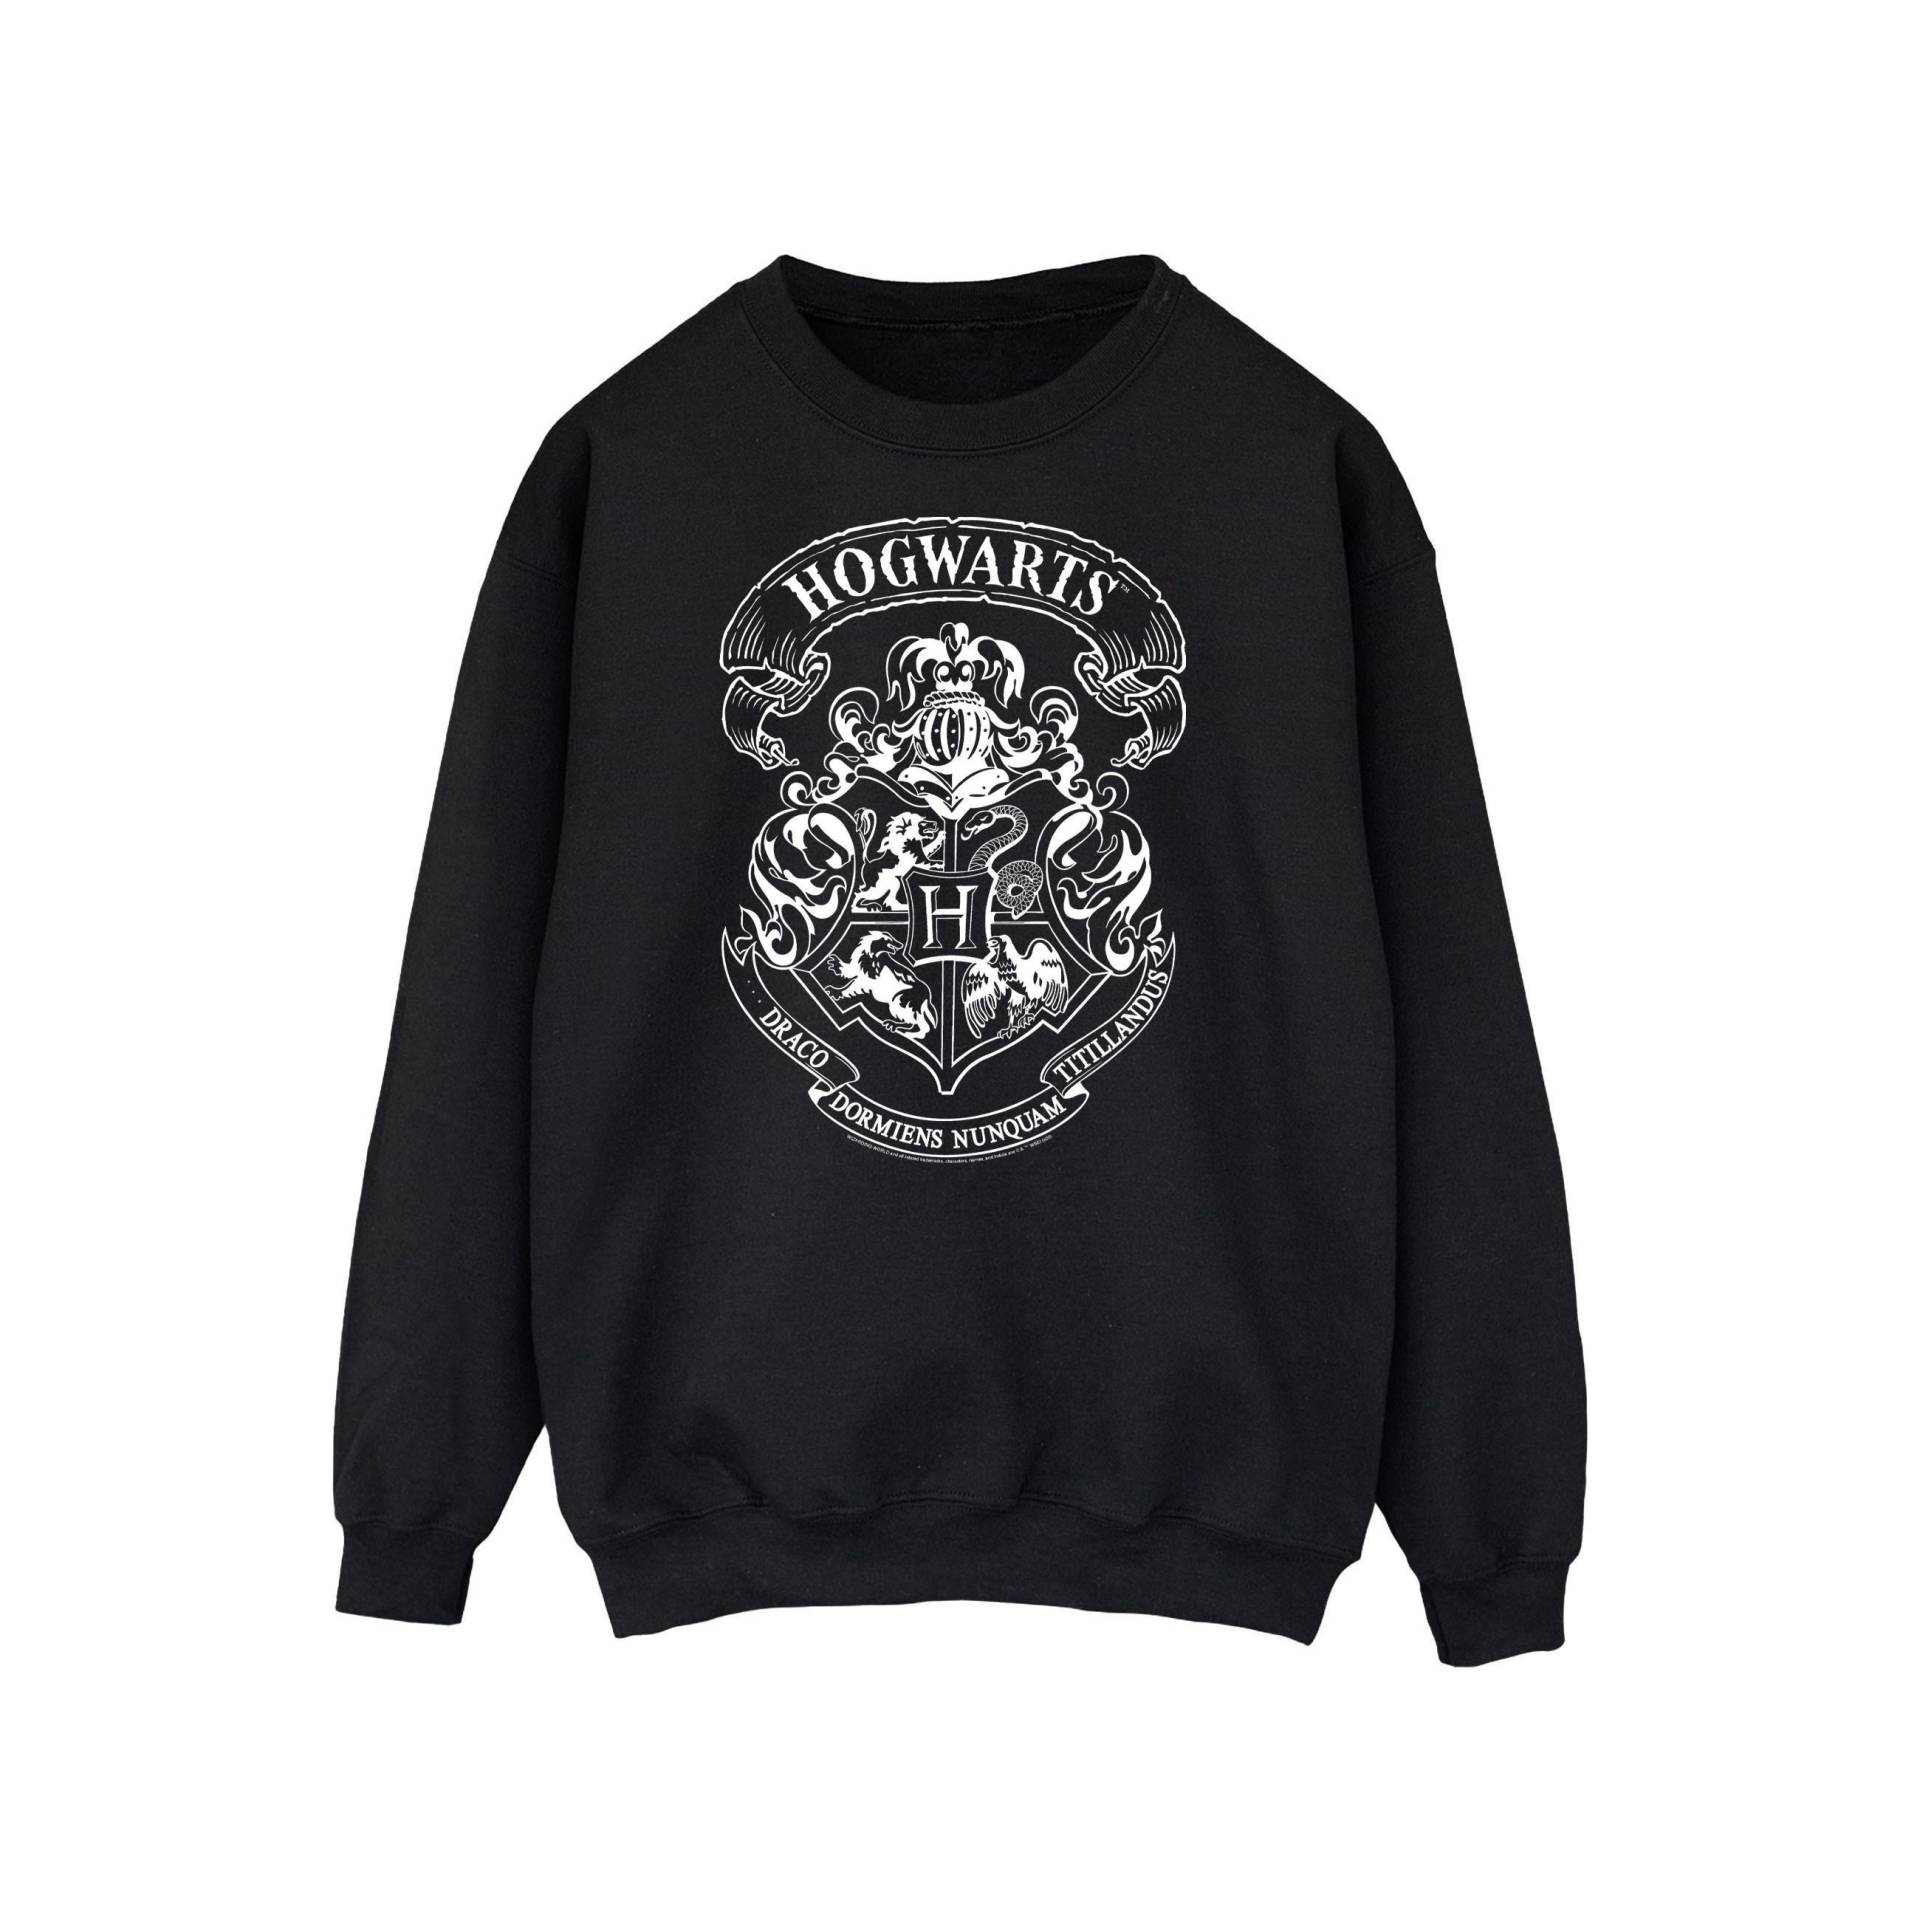 Sweatshirt Unisex Schwarz 140/146 von Harry Potter